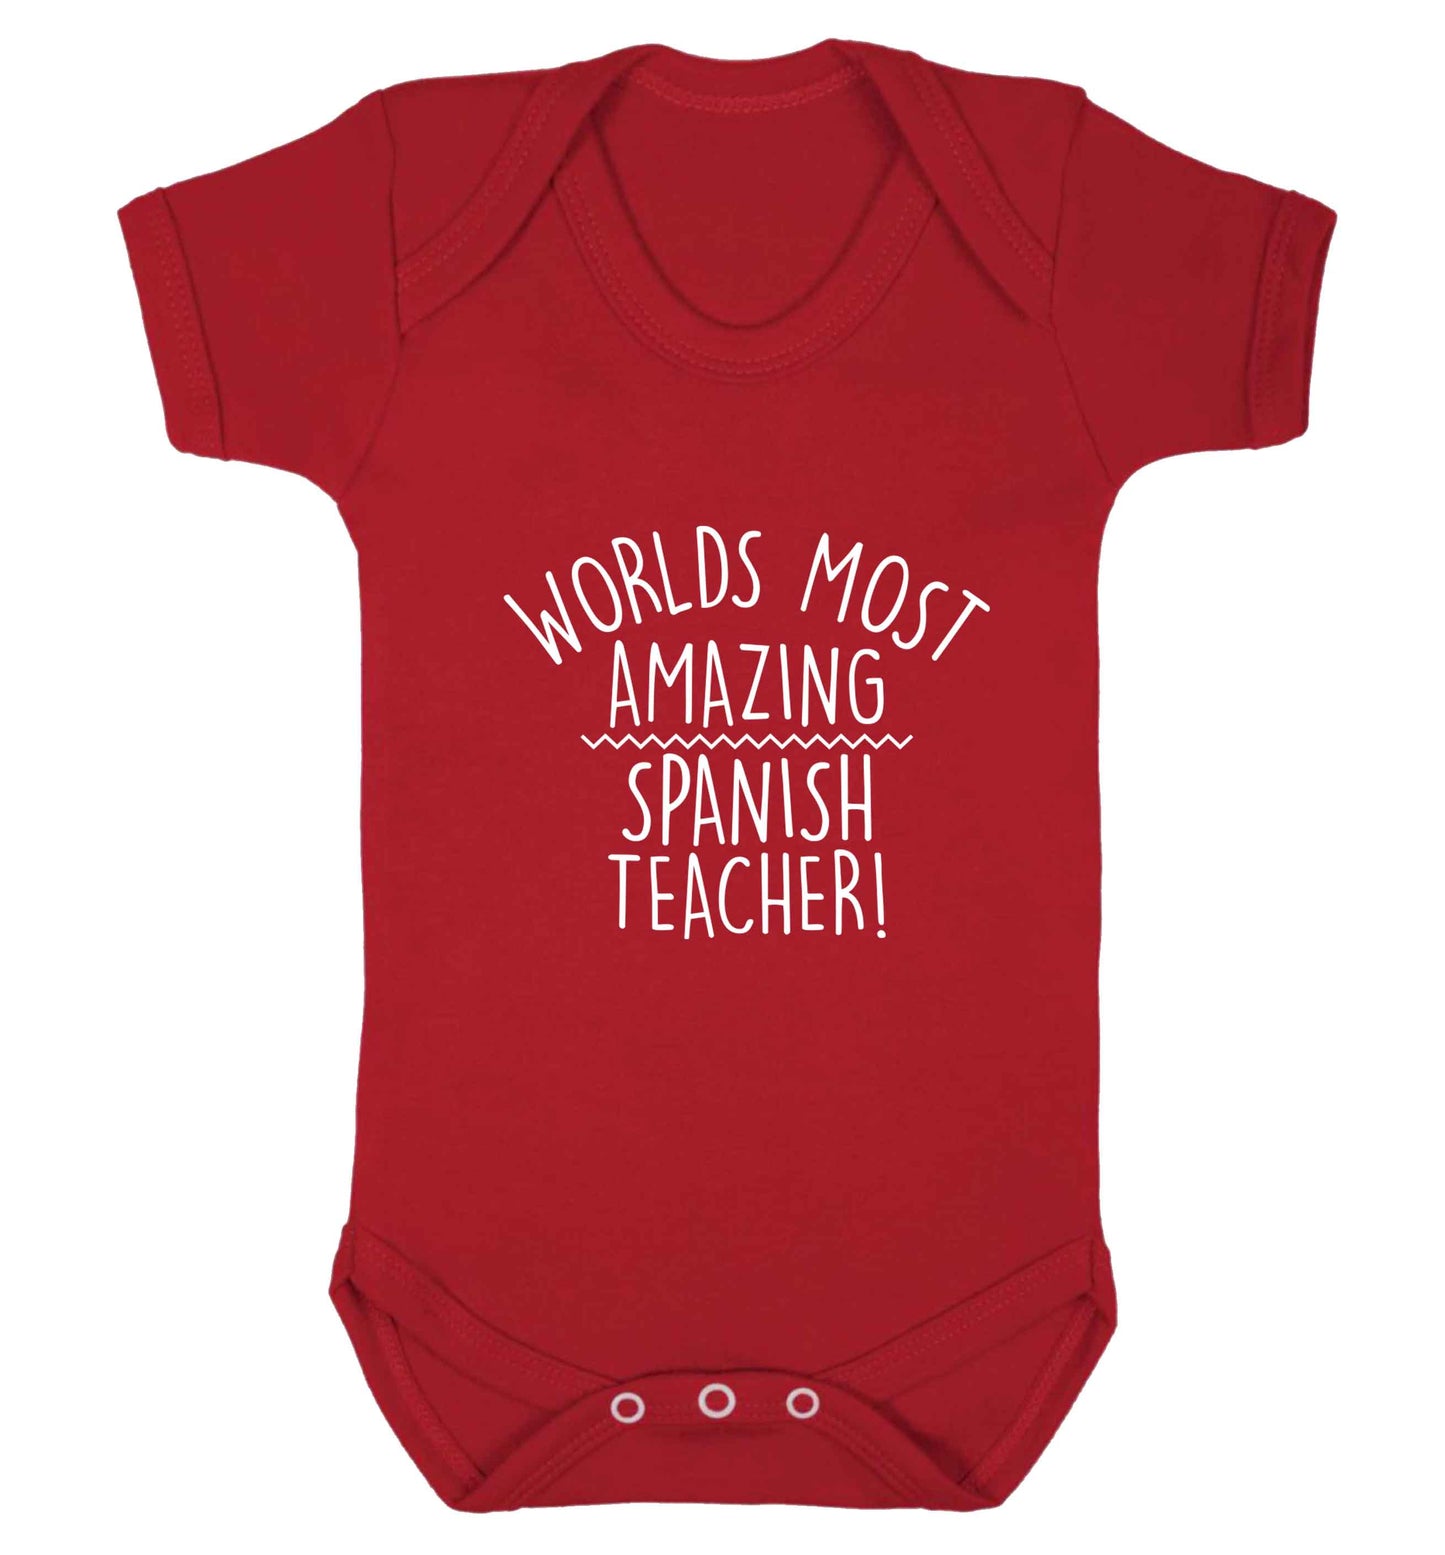 Worlds most amazing Spanish teacher baby vest red 18-24 months